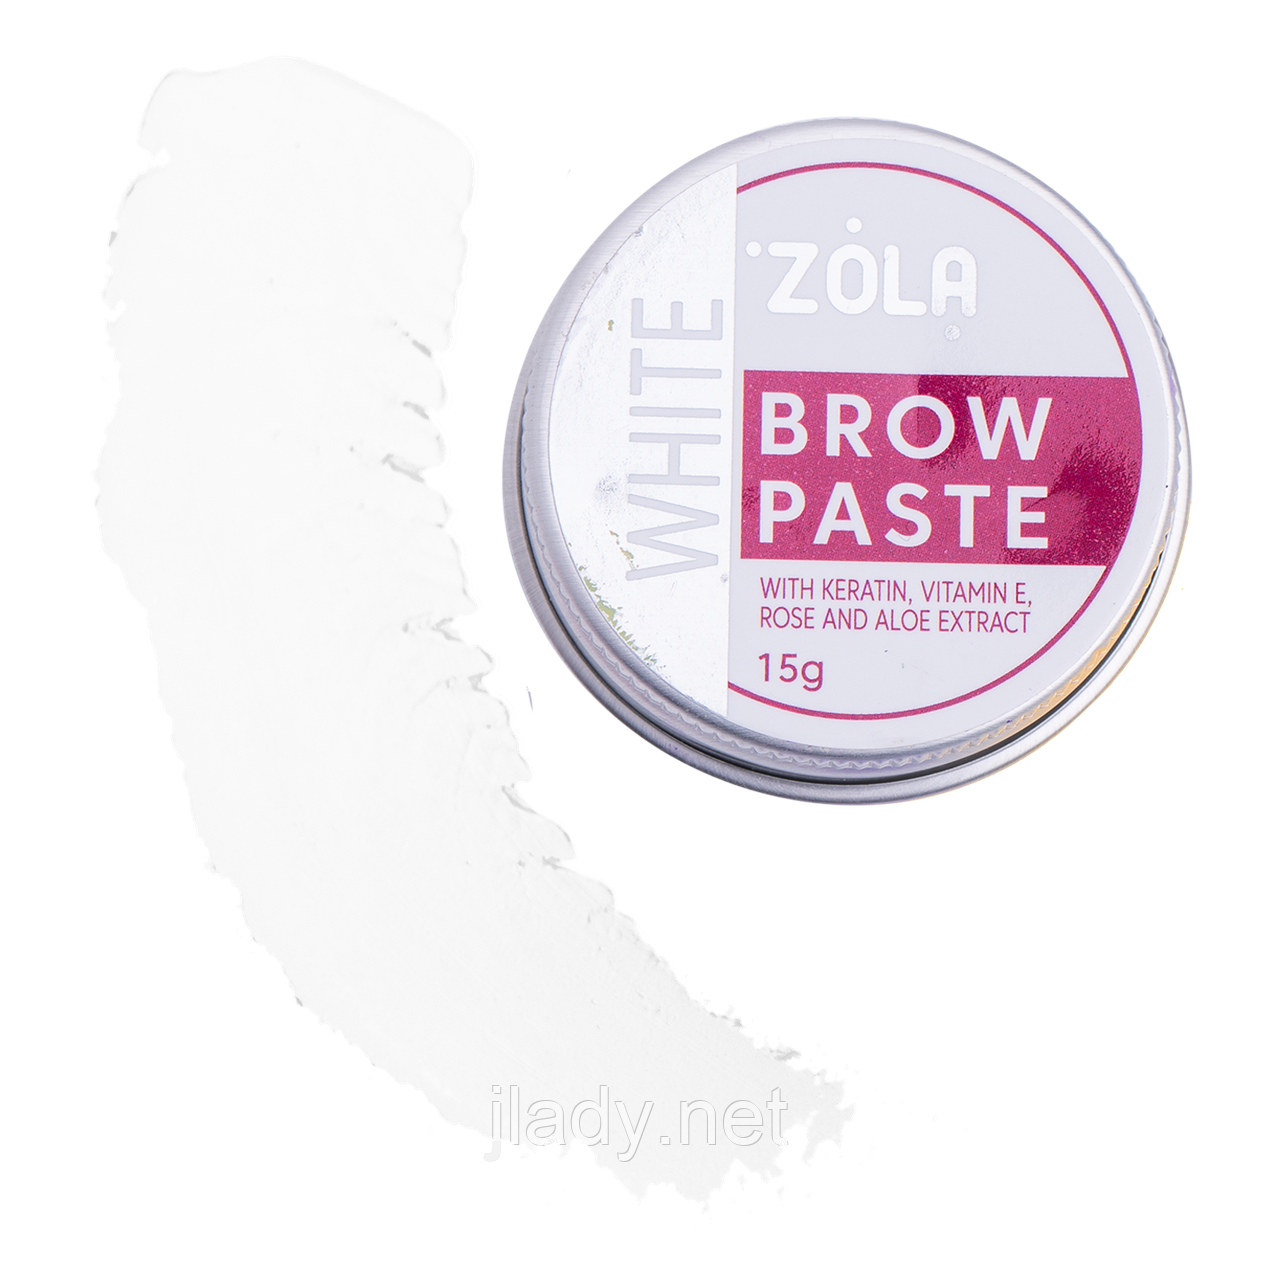 Brow-паста біла для брів ZOLA, 15 гр